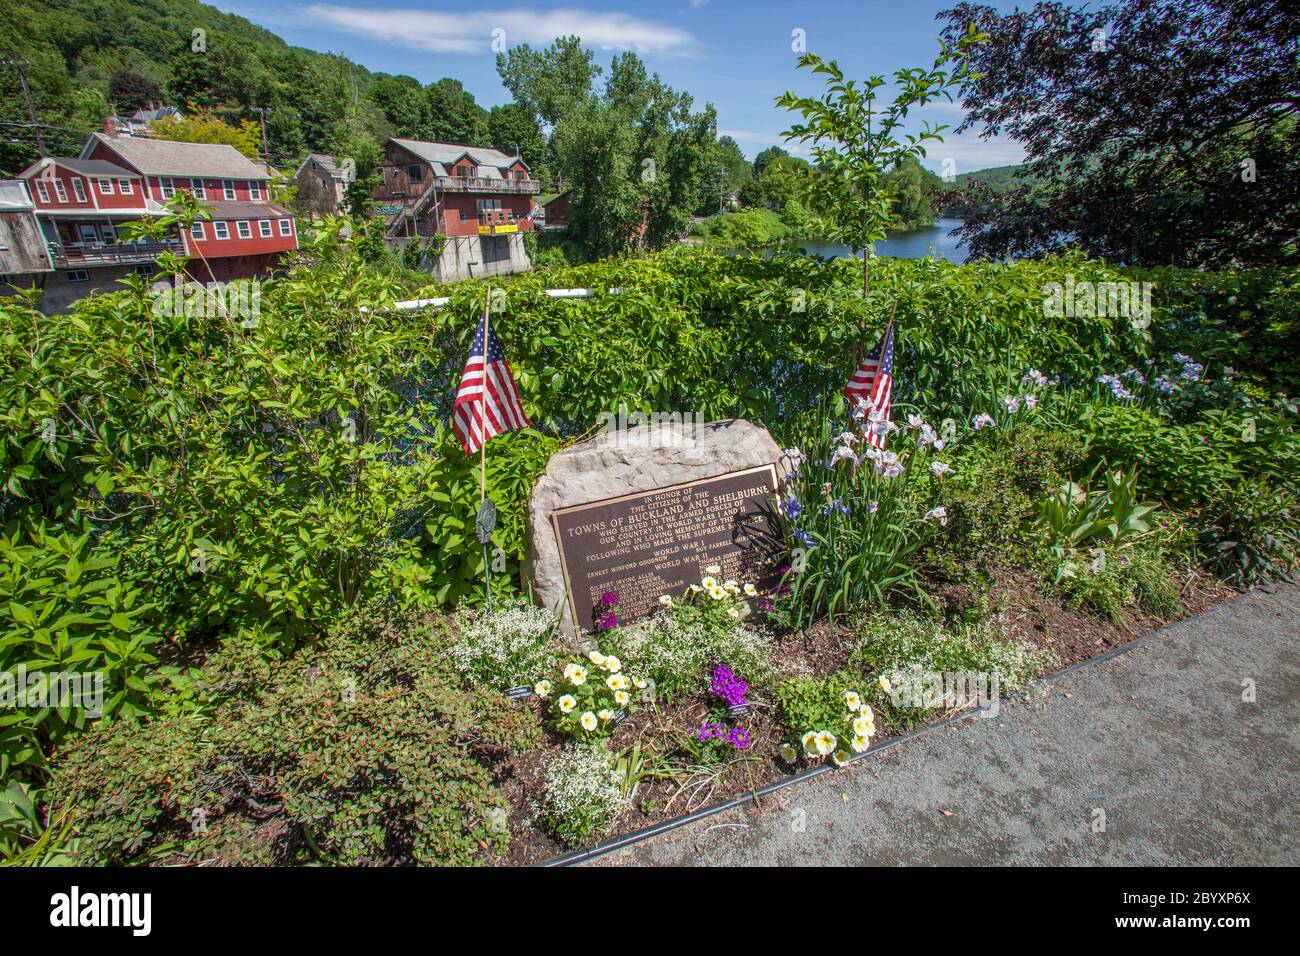 The Bridge of Flowers in Shelburne Falls, Massachusetts Stock Photo